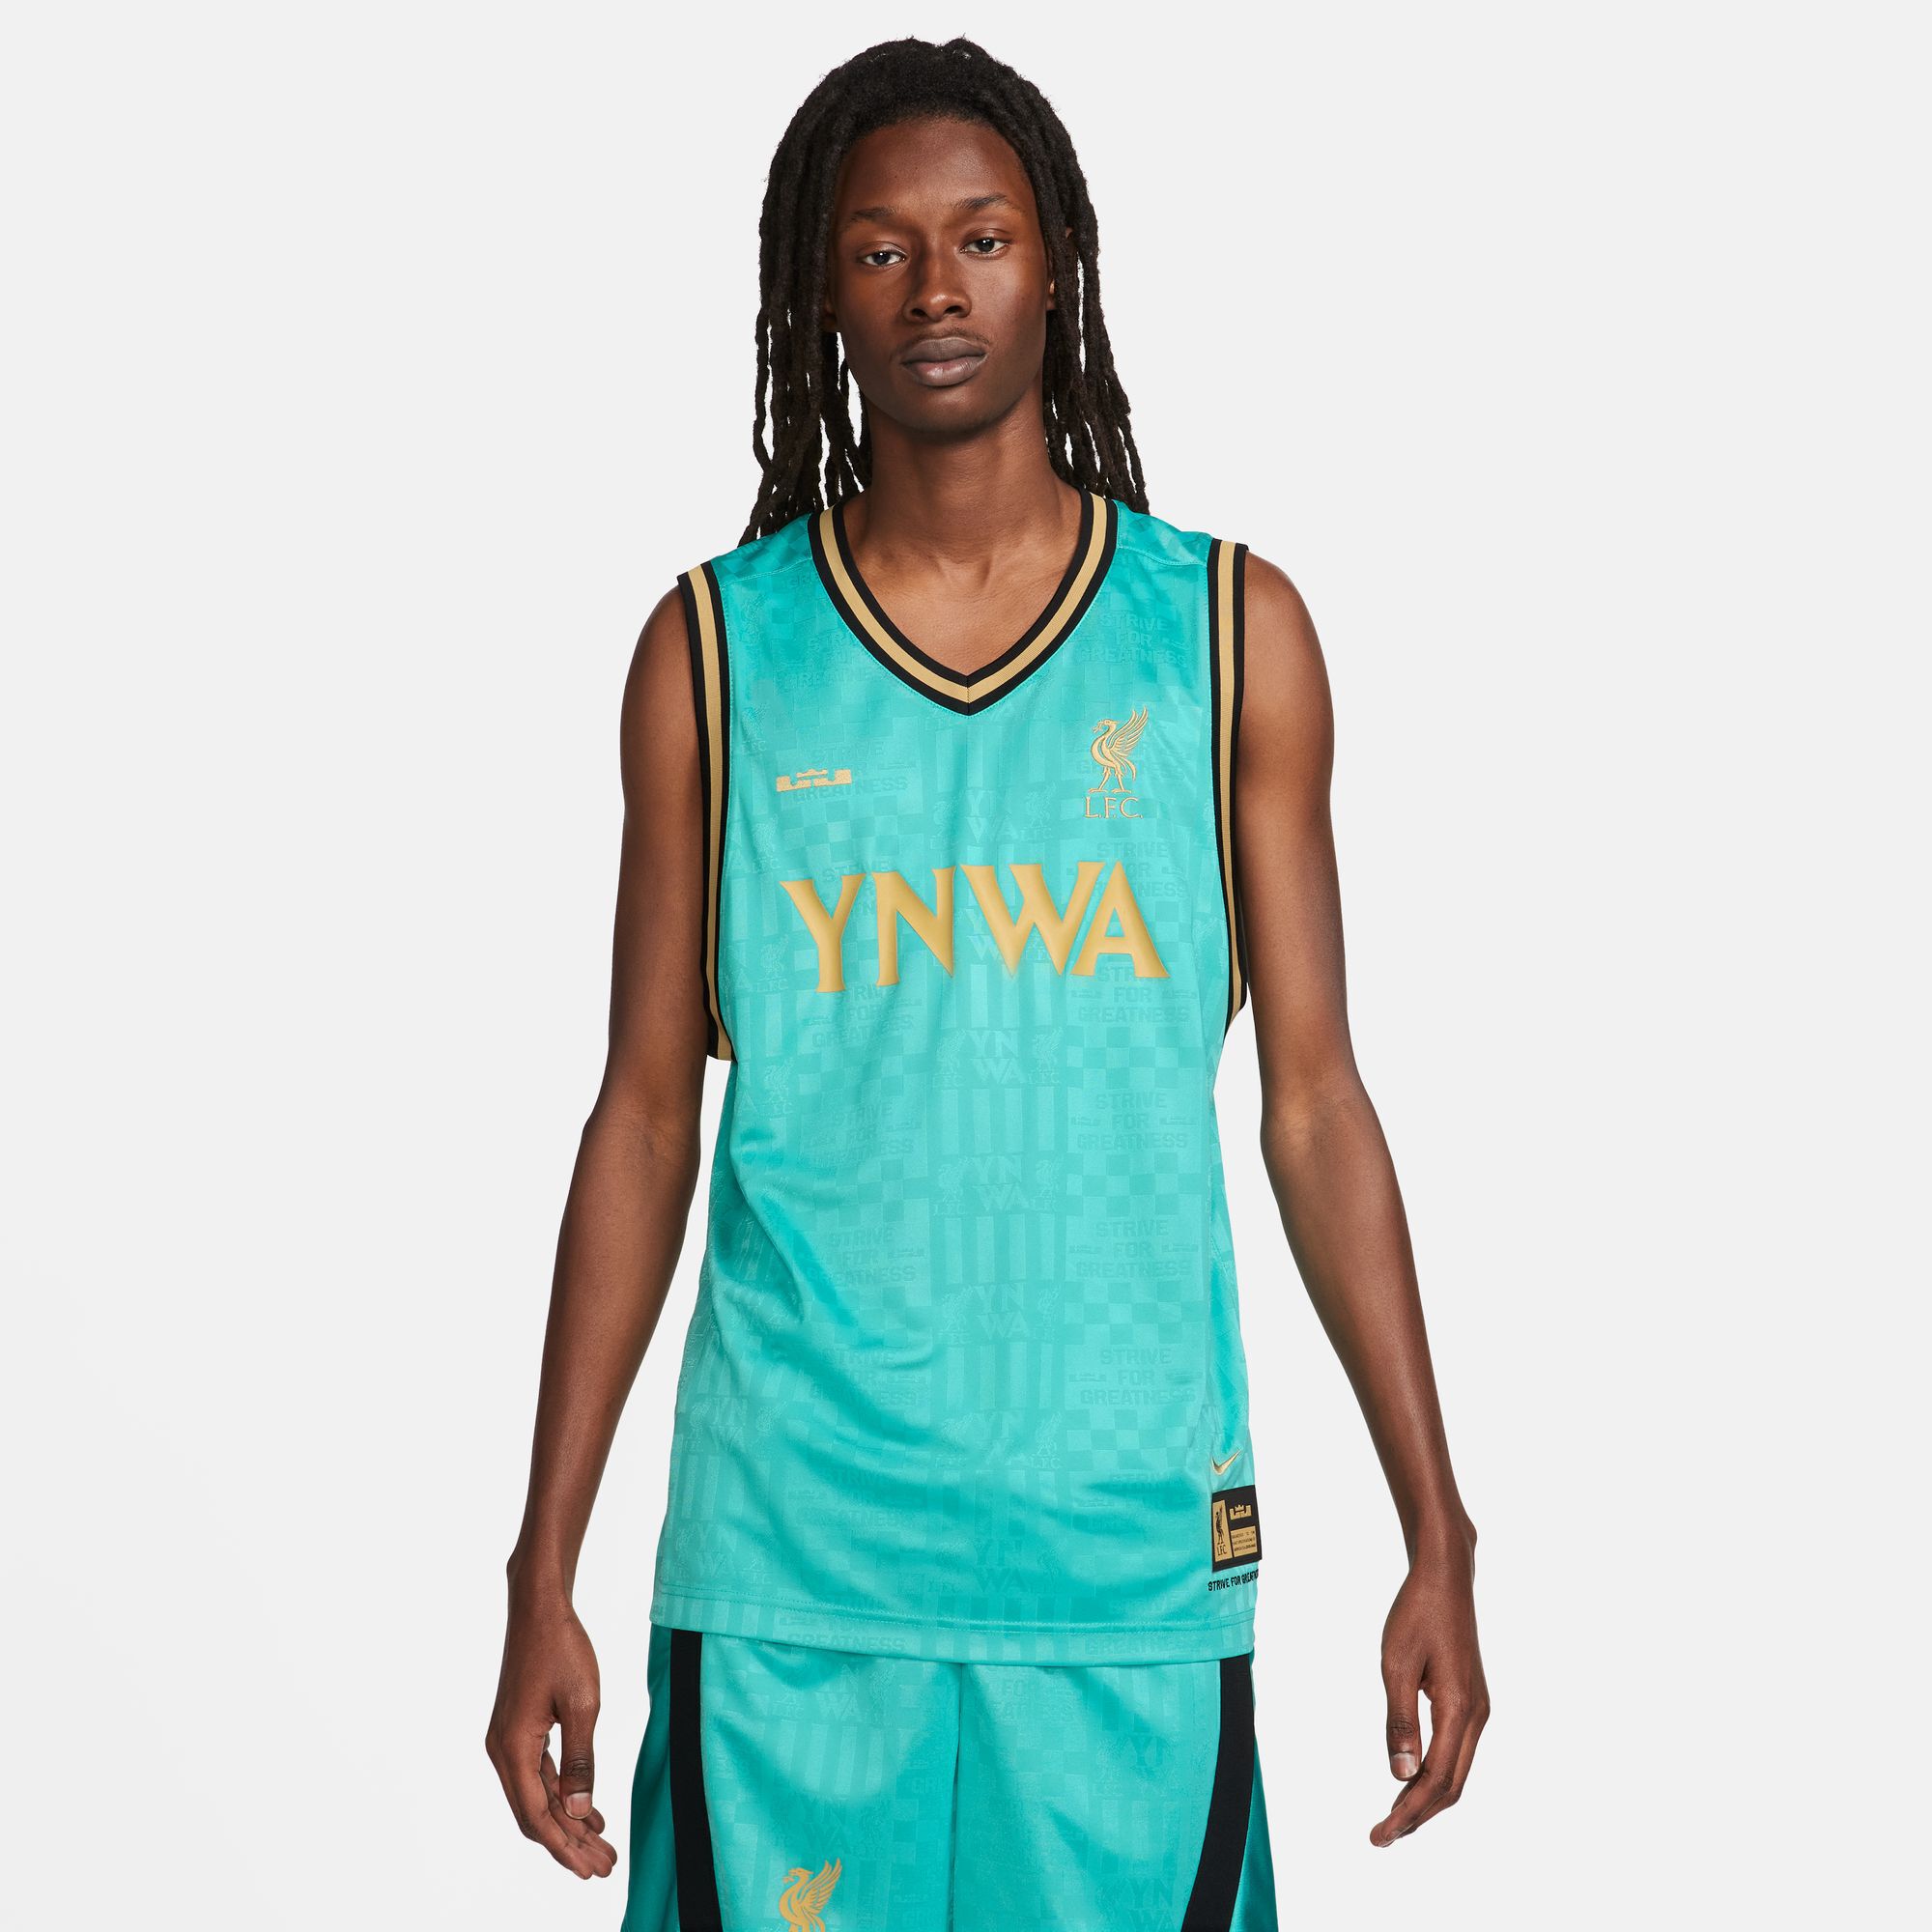 NBA Players - NBA Fangear, Jerseys & Gear - rebel